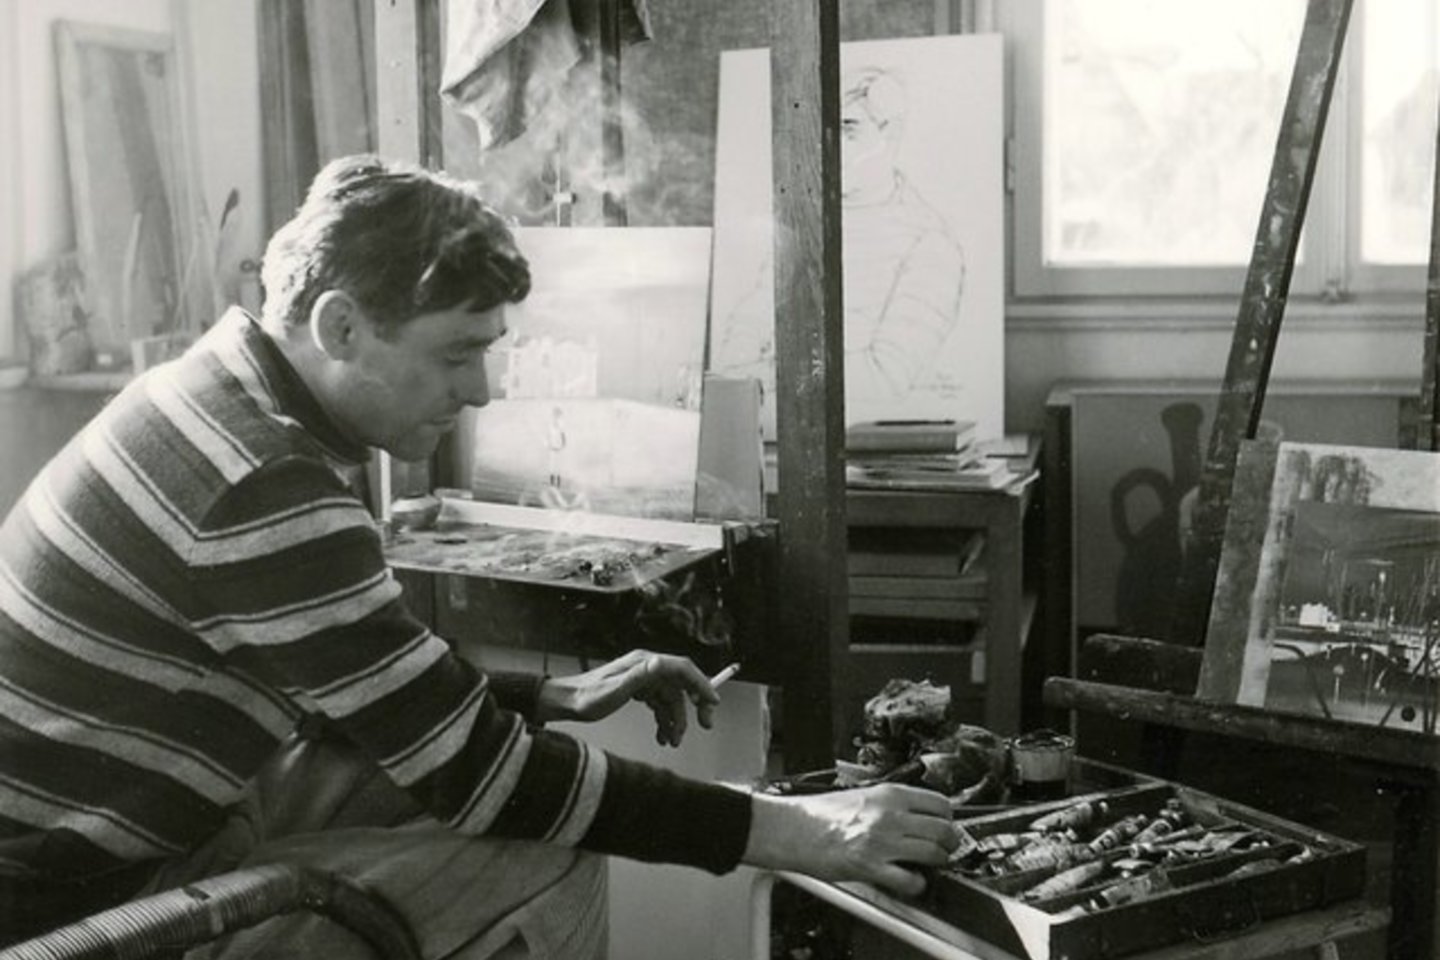  H.Skodlerrakas savo dirbtuvėje.1952.<br>Rytprūsių krašto muziejaus nuotr.